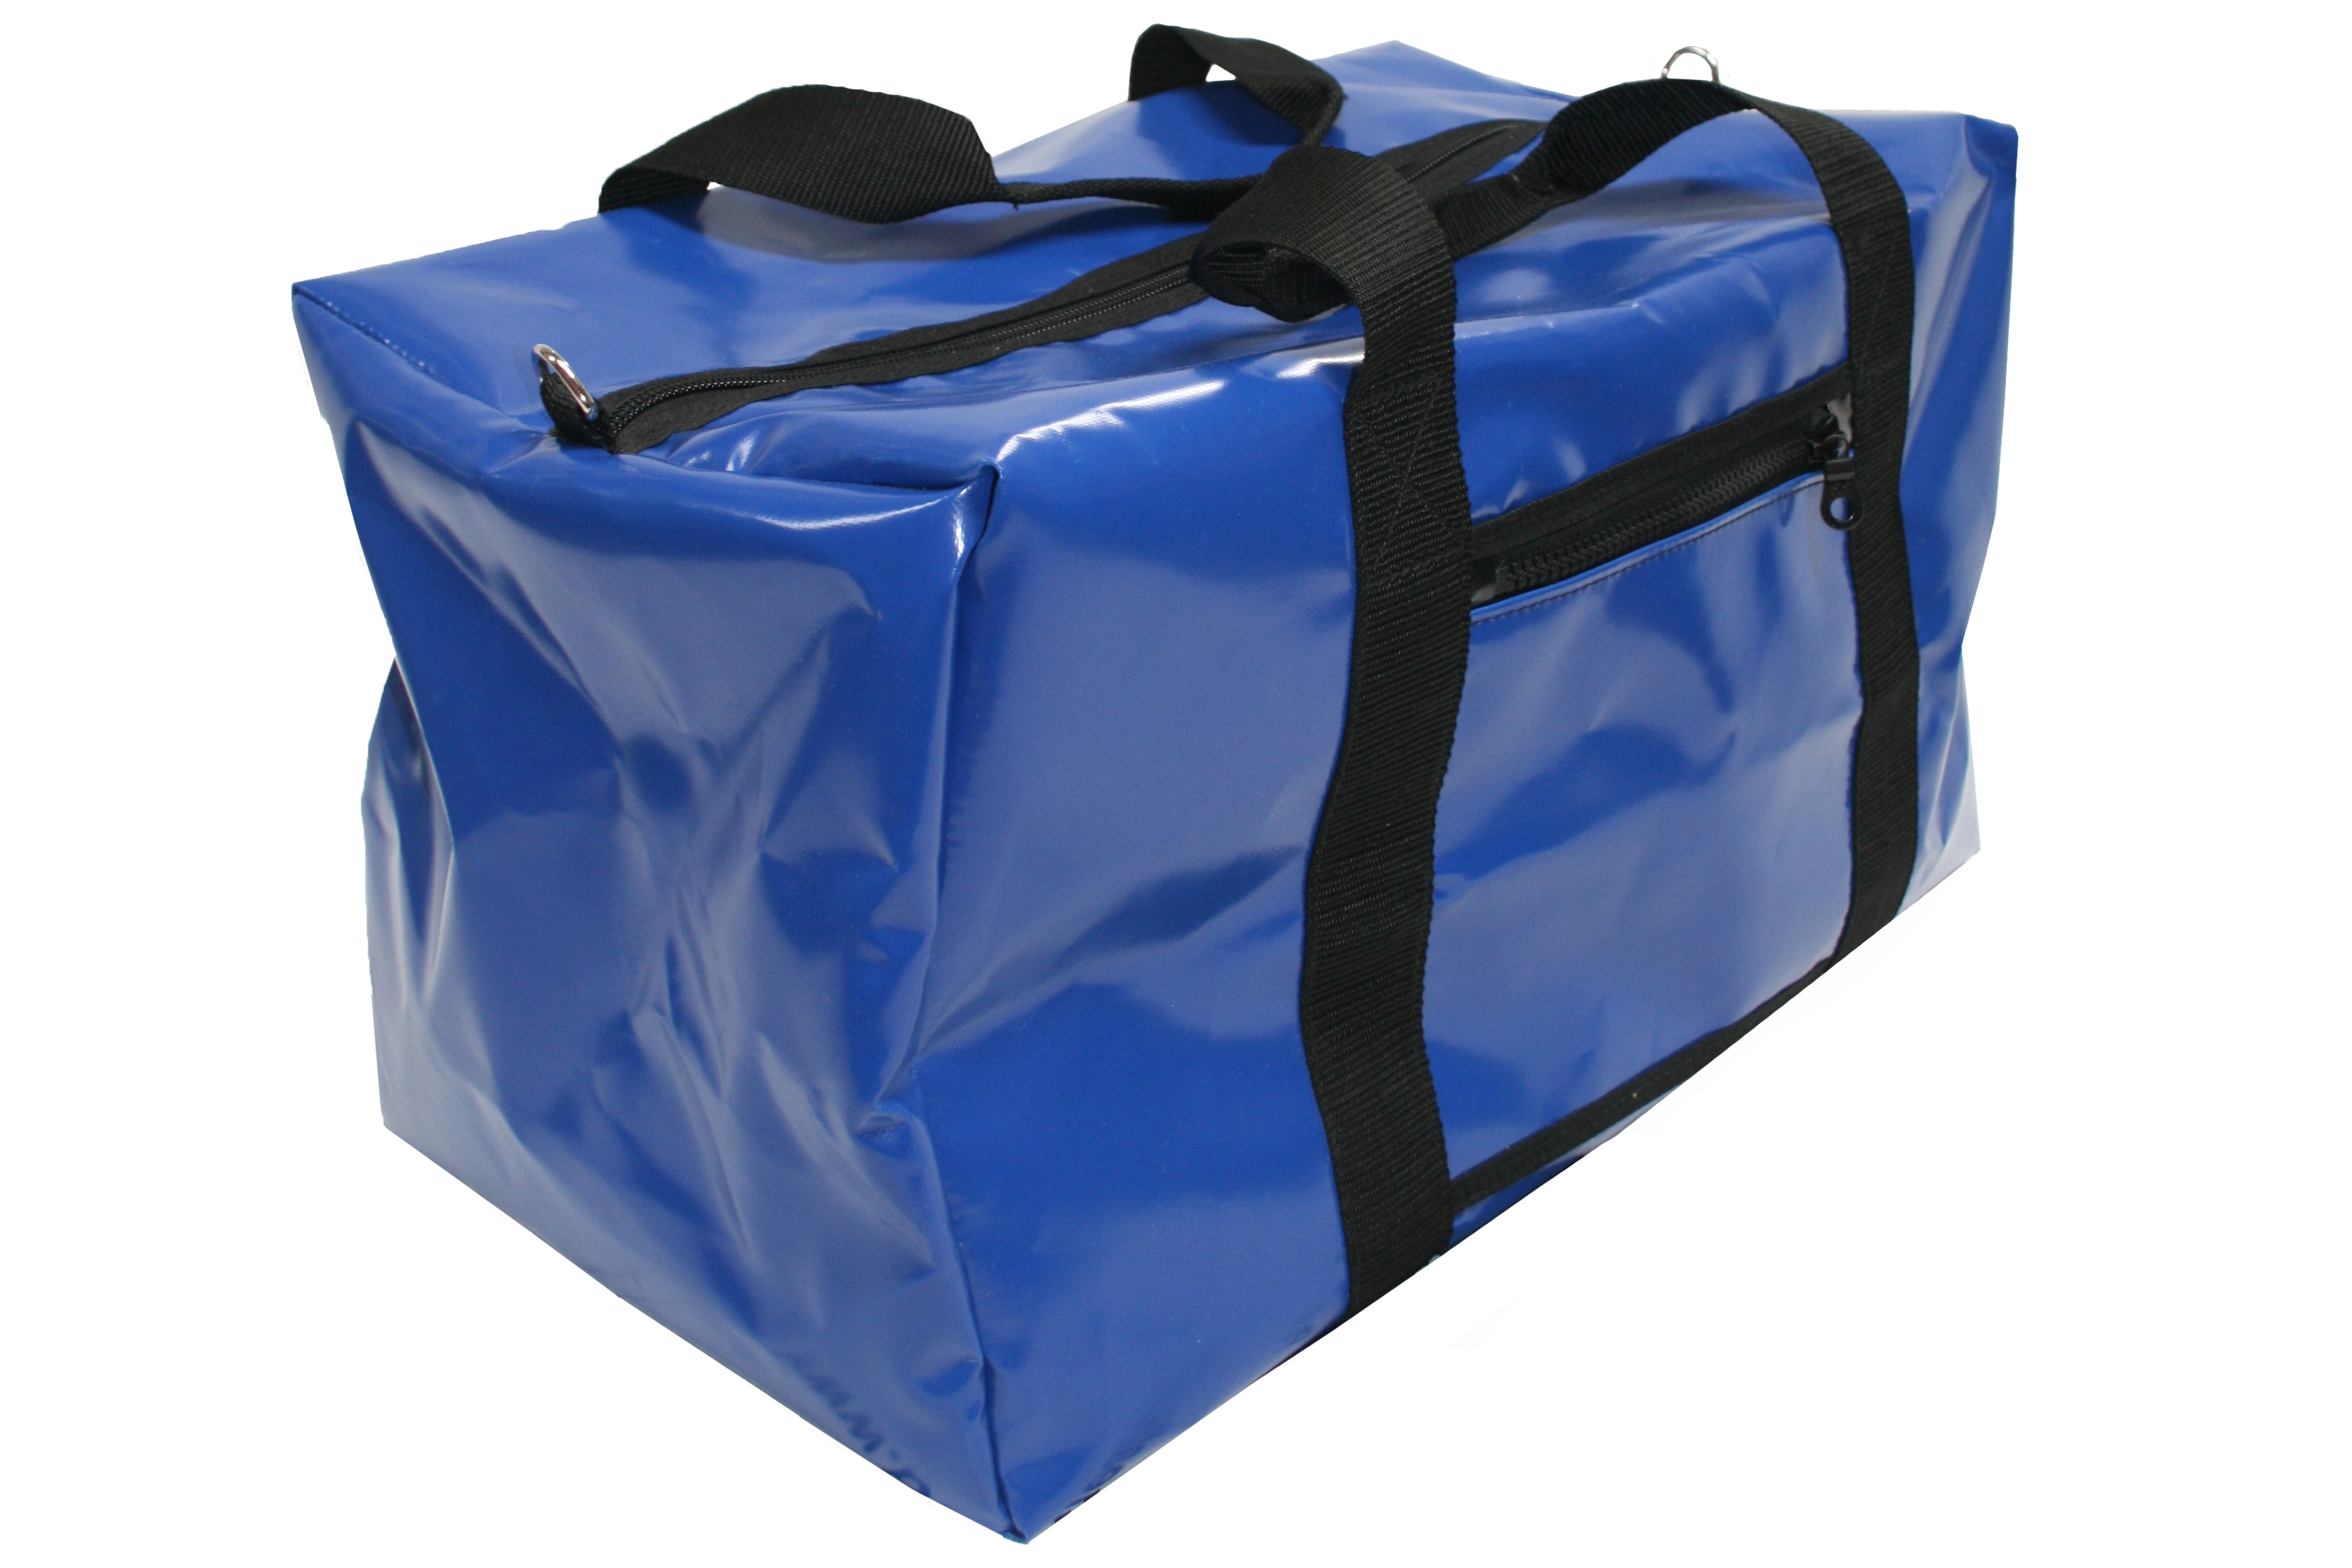 Suitcase & Waterproof Bag Fabric